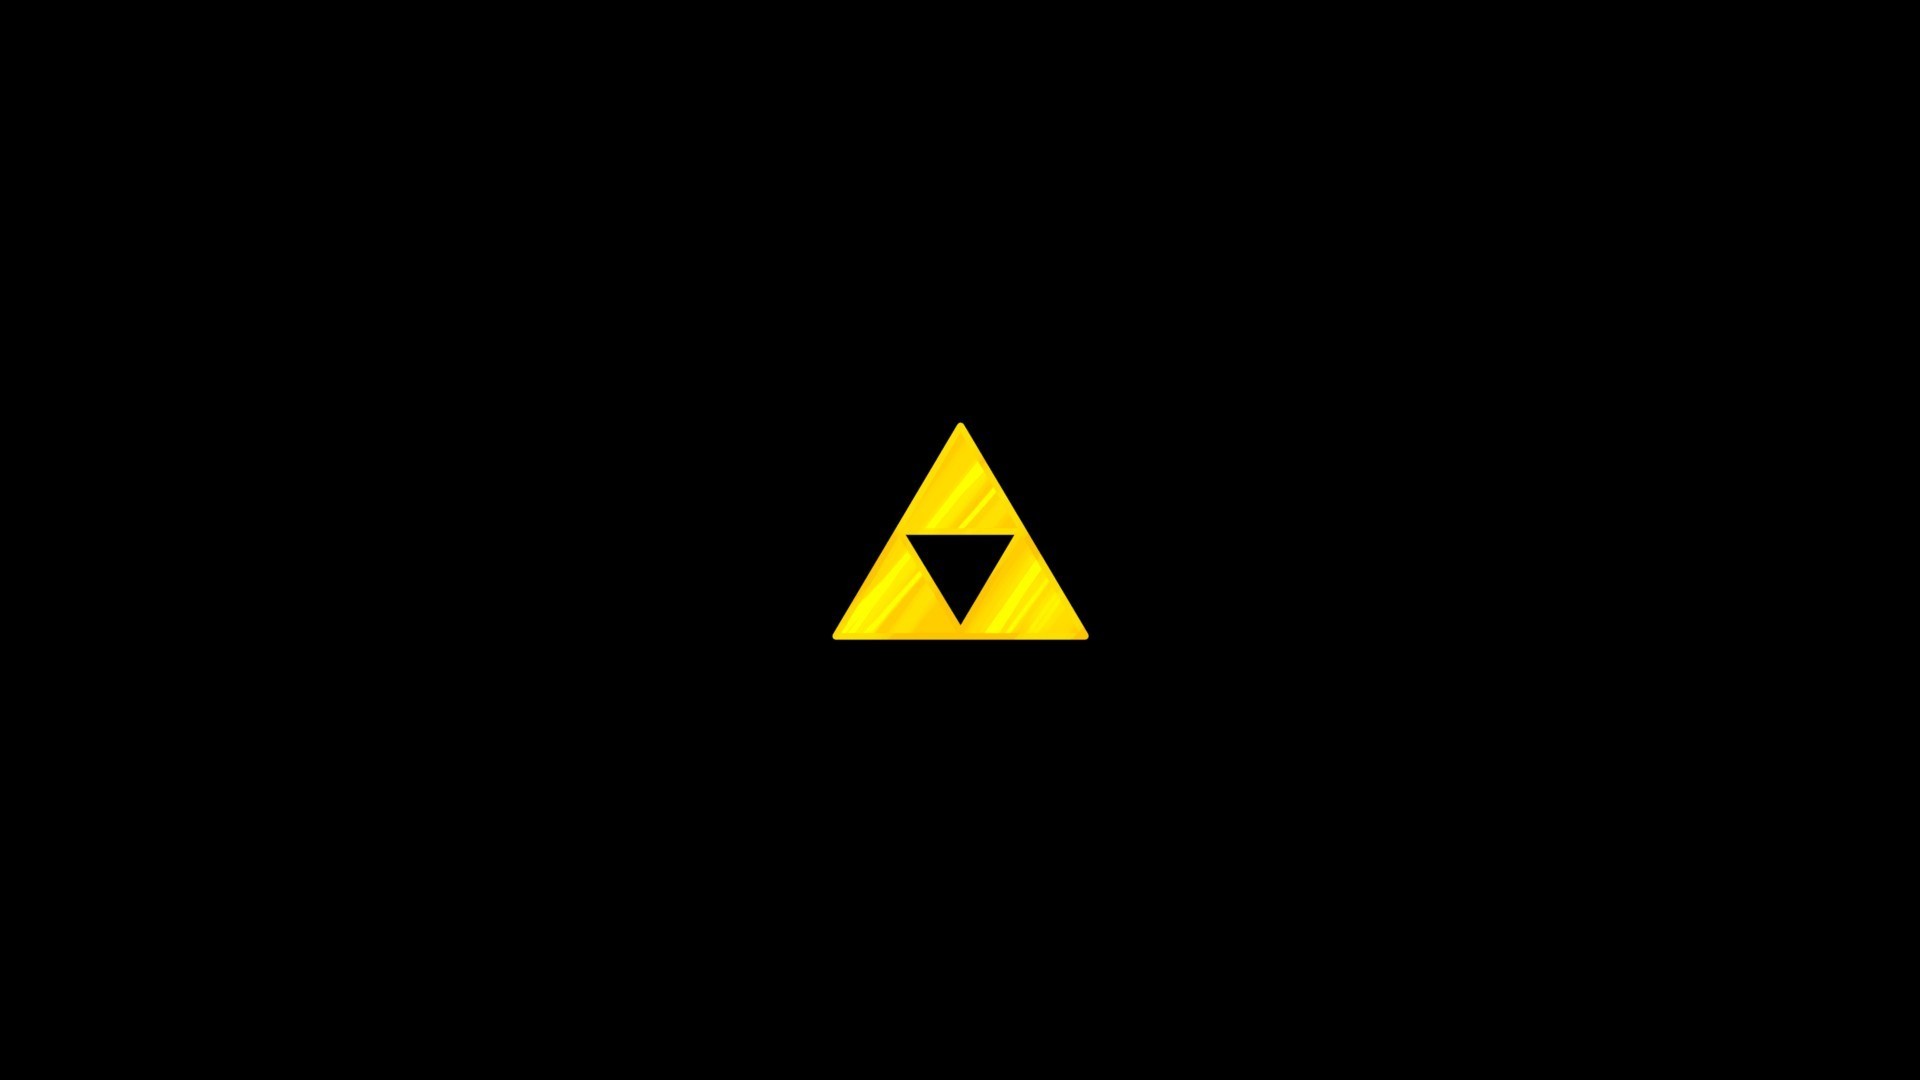 The Legend Of Zelda Black Background Simple Triforce Wallpaper